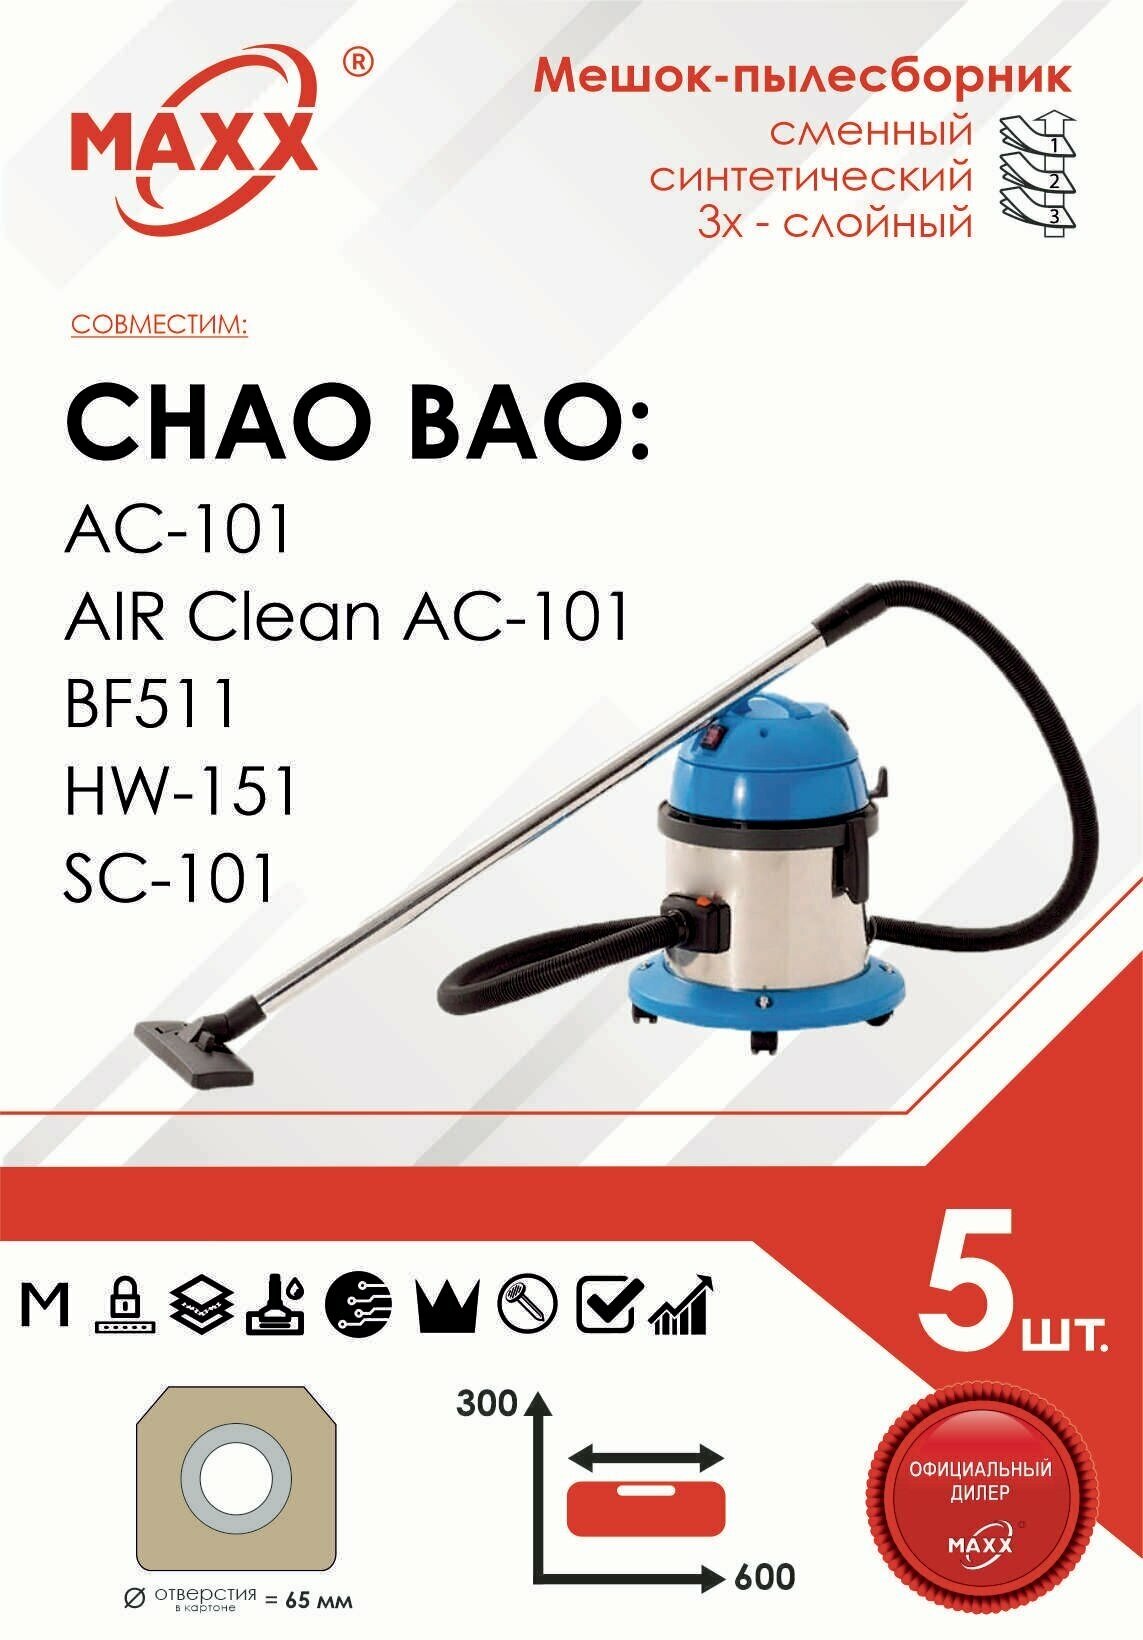 Мешок - пылесборник 5 шт. для пылесоса Chao Bao BF511, HW-151, SC-101, AC-101